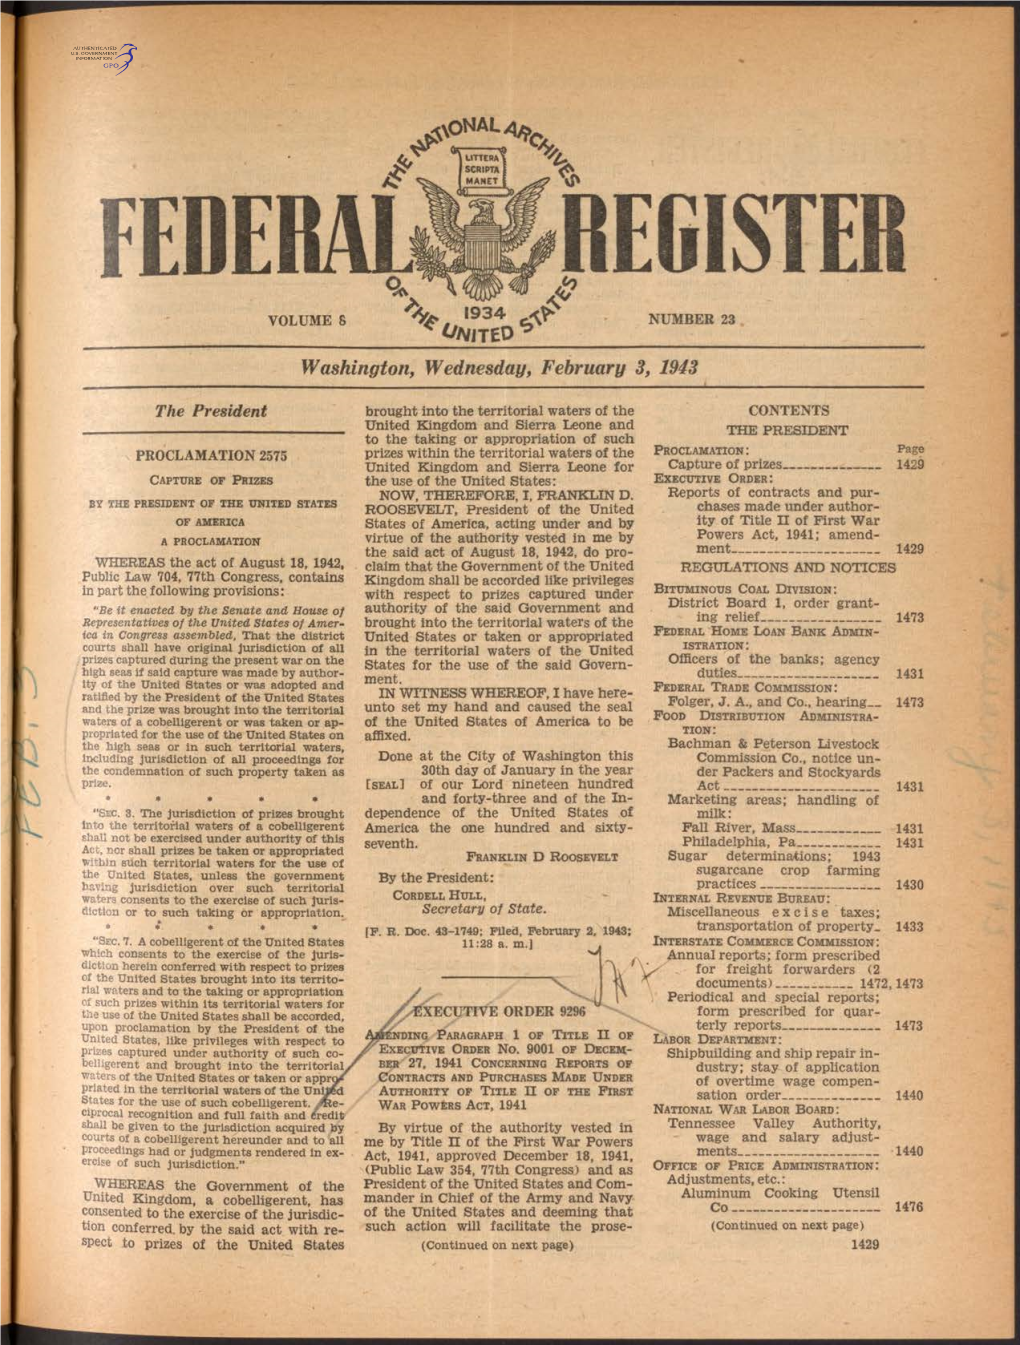 Federal Register Volume 8 ' 9 3 4 ^ Number 23